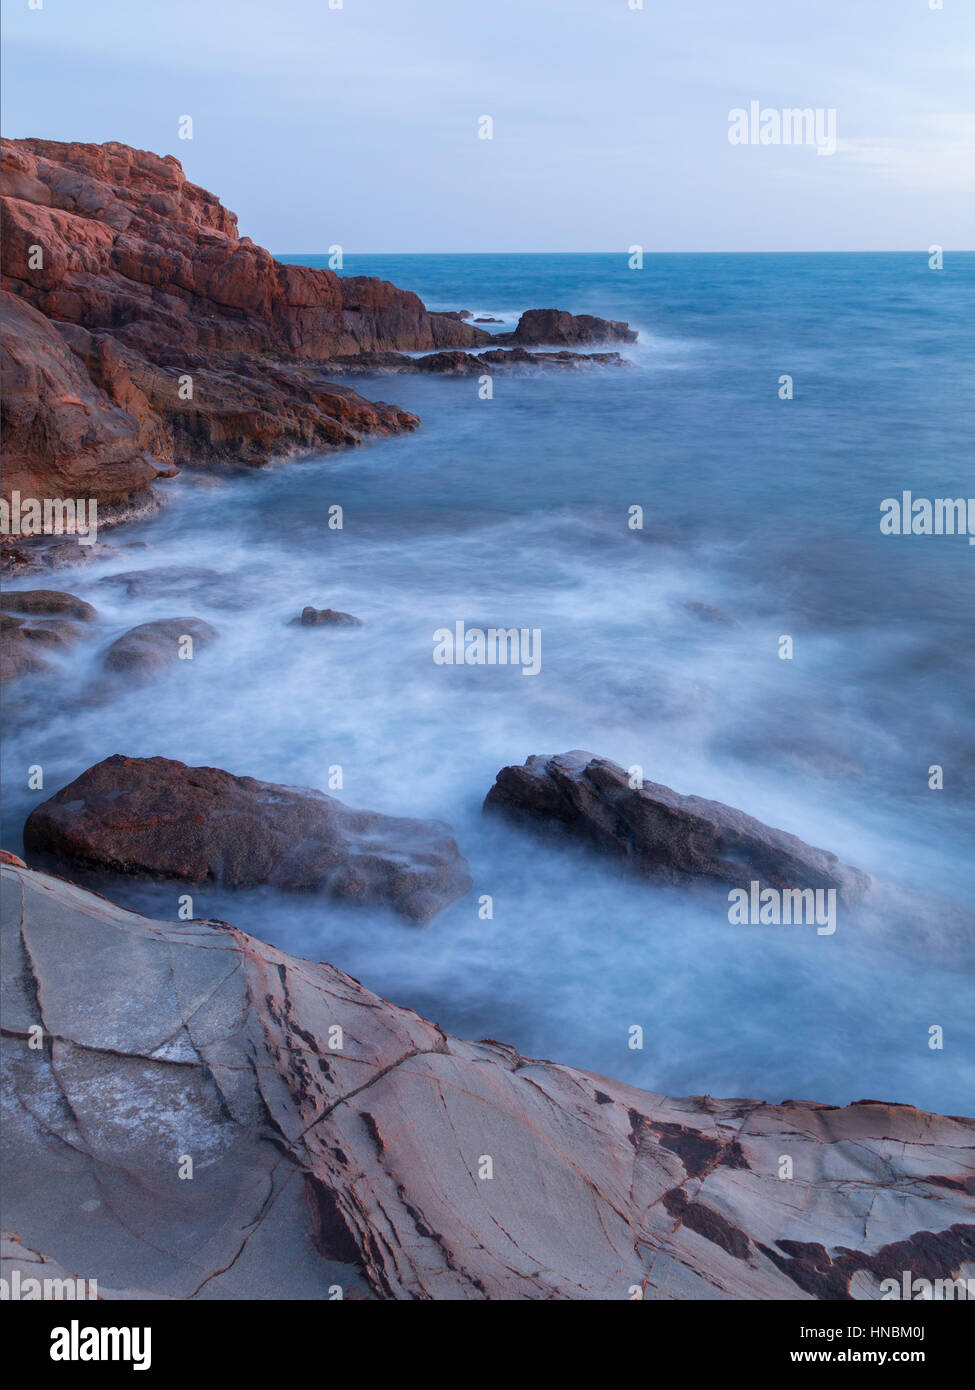 Rocks on the coast near Livorno in Tuscany region in Italy Stock Photo